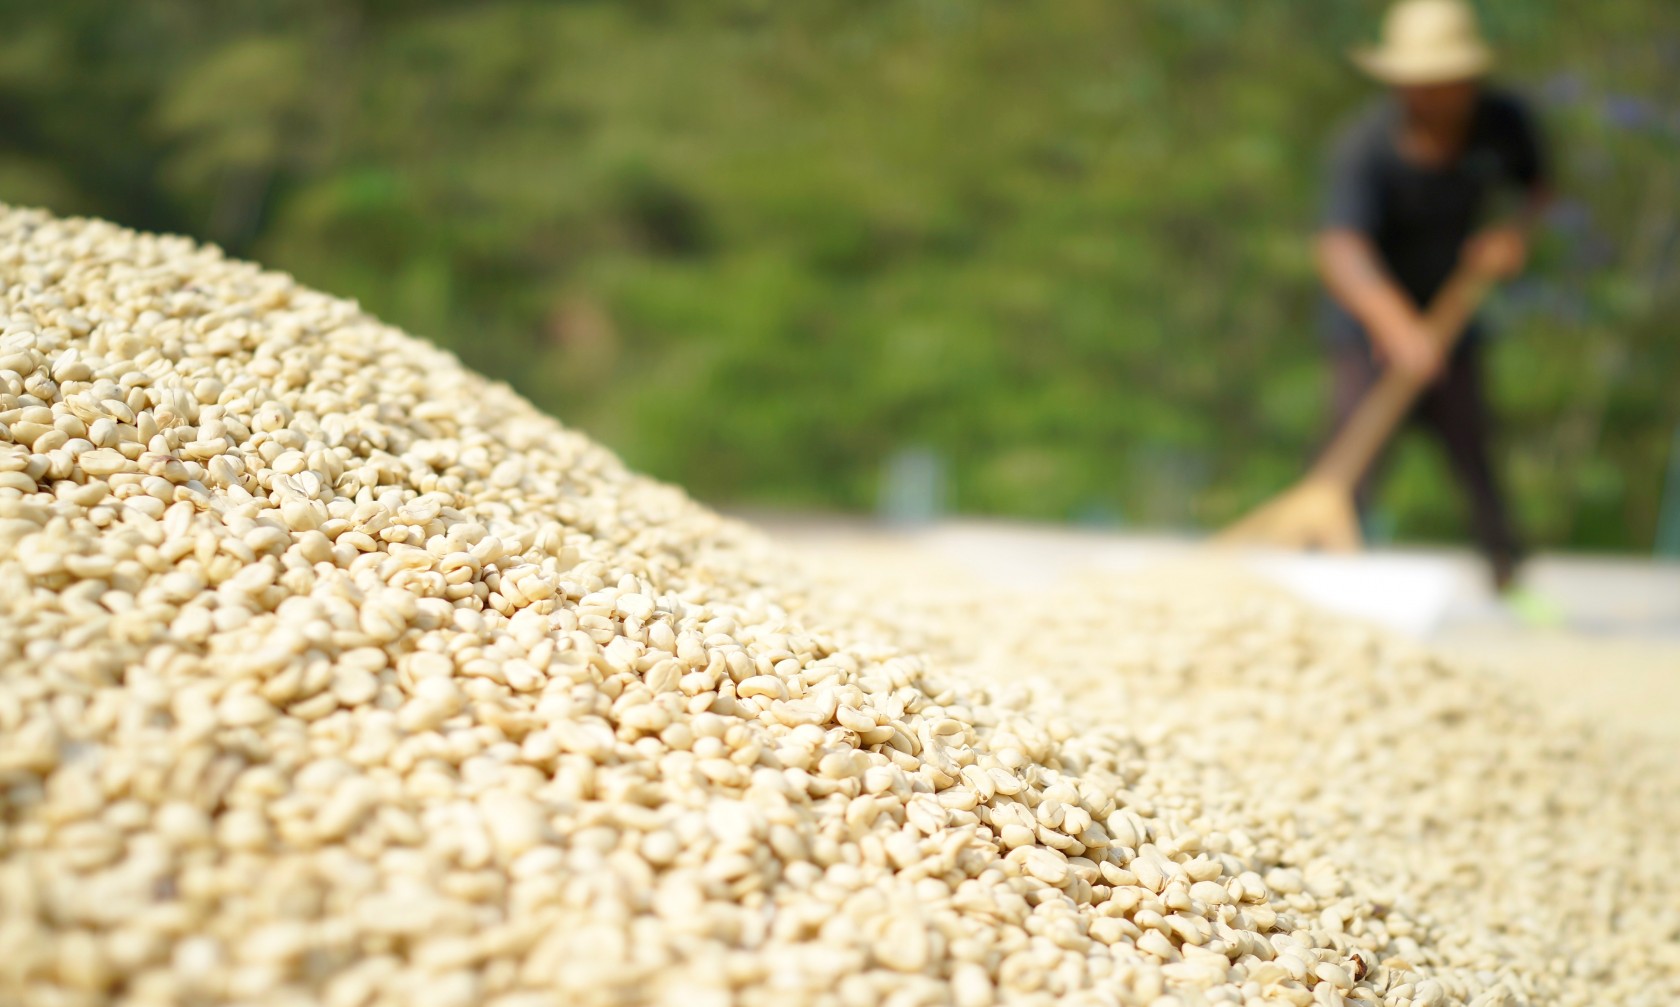 スペシャルティコーヒー素材買付の旅 2016 グアテマラ